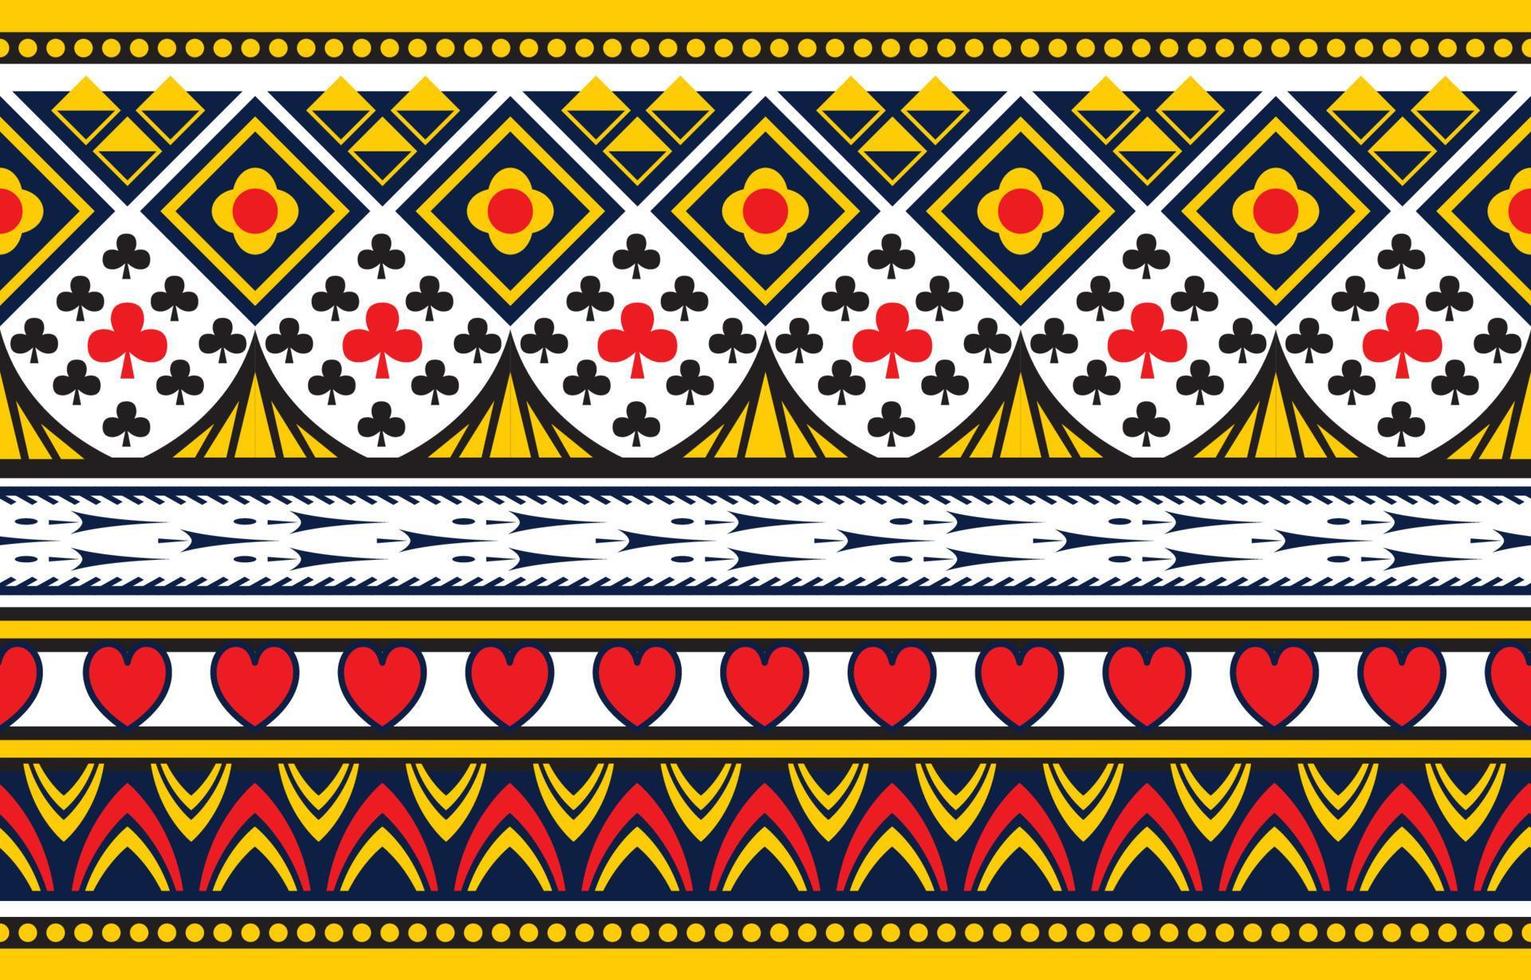 design etnico motivo quadrato blu cuore rosso. disegno artistico chevron, ricamo popolare. stampa di ornamenti d'arte geometrica azteca. design per moquette, carta da parati, abbigliamento, avvolgimento, tessuto, copertina. vettore